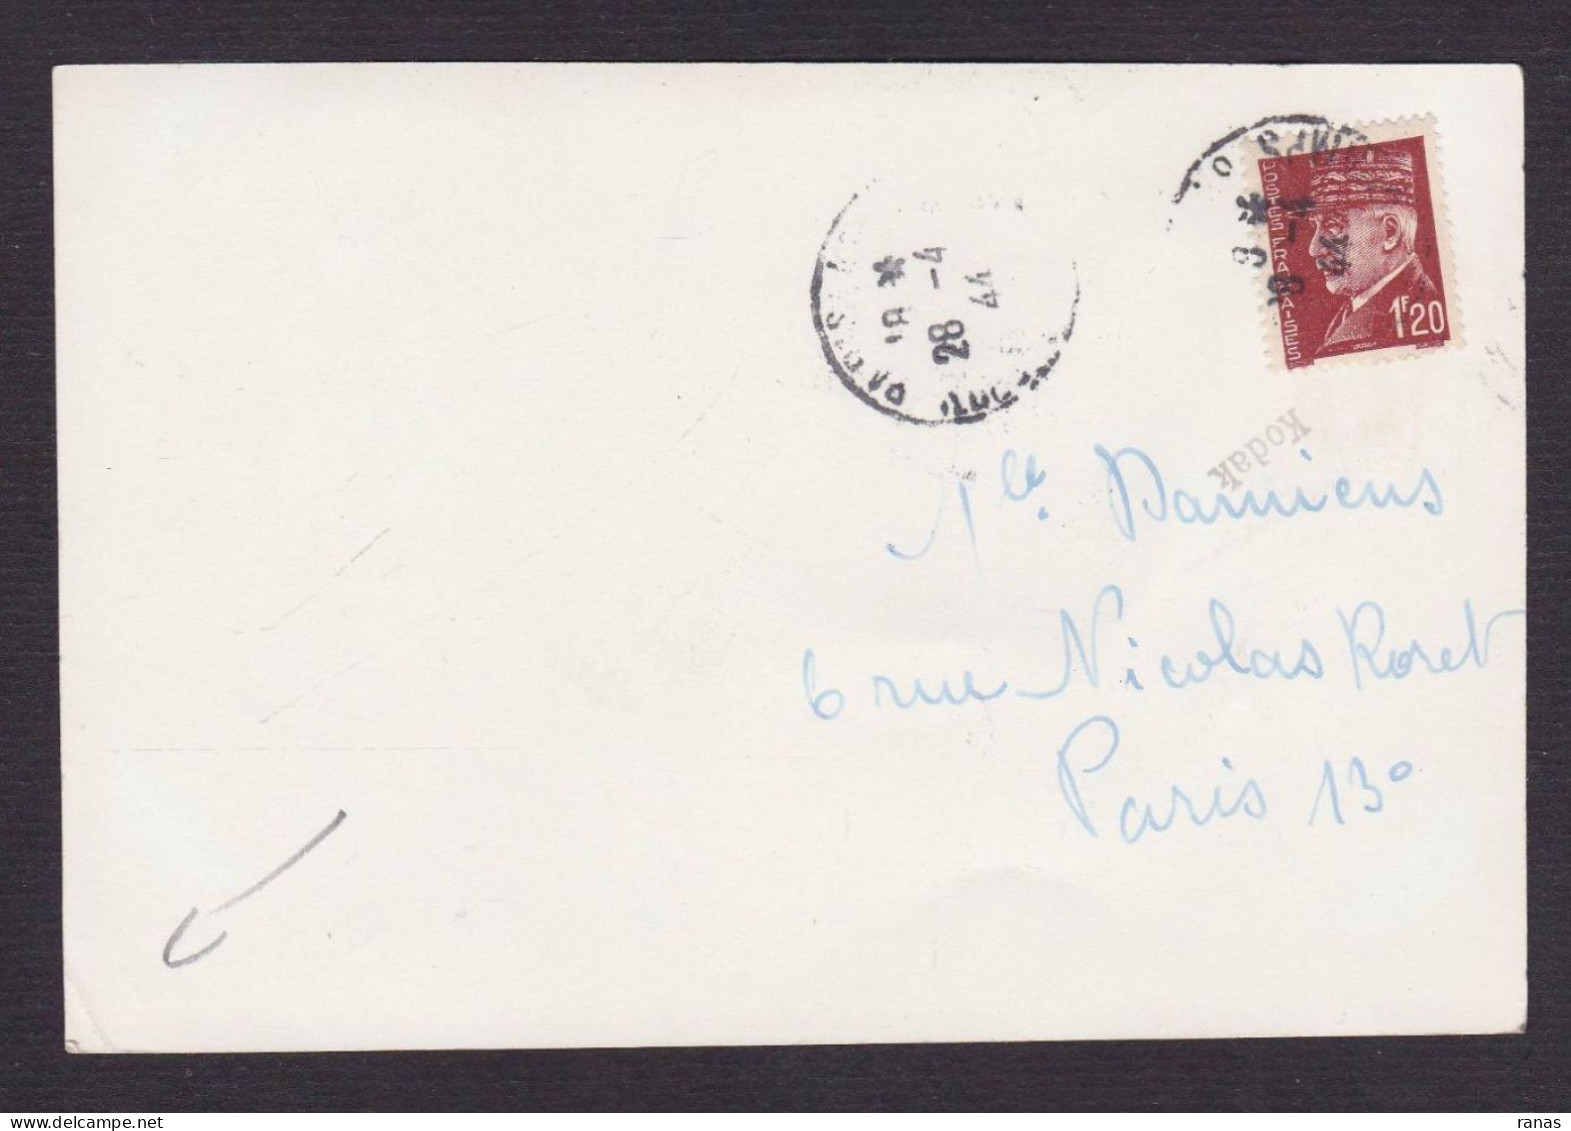 Signature Autographe De Jean Marais Sur Photo 10 X 14,7 - Actores Y Comediantes 